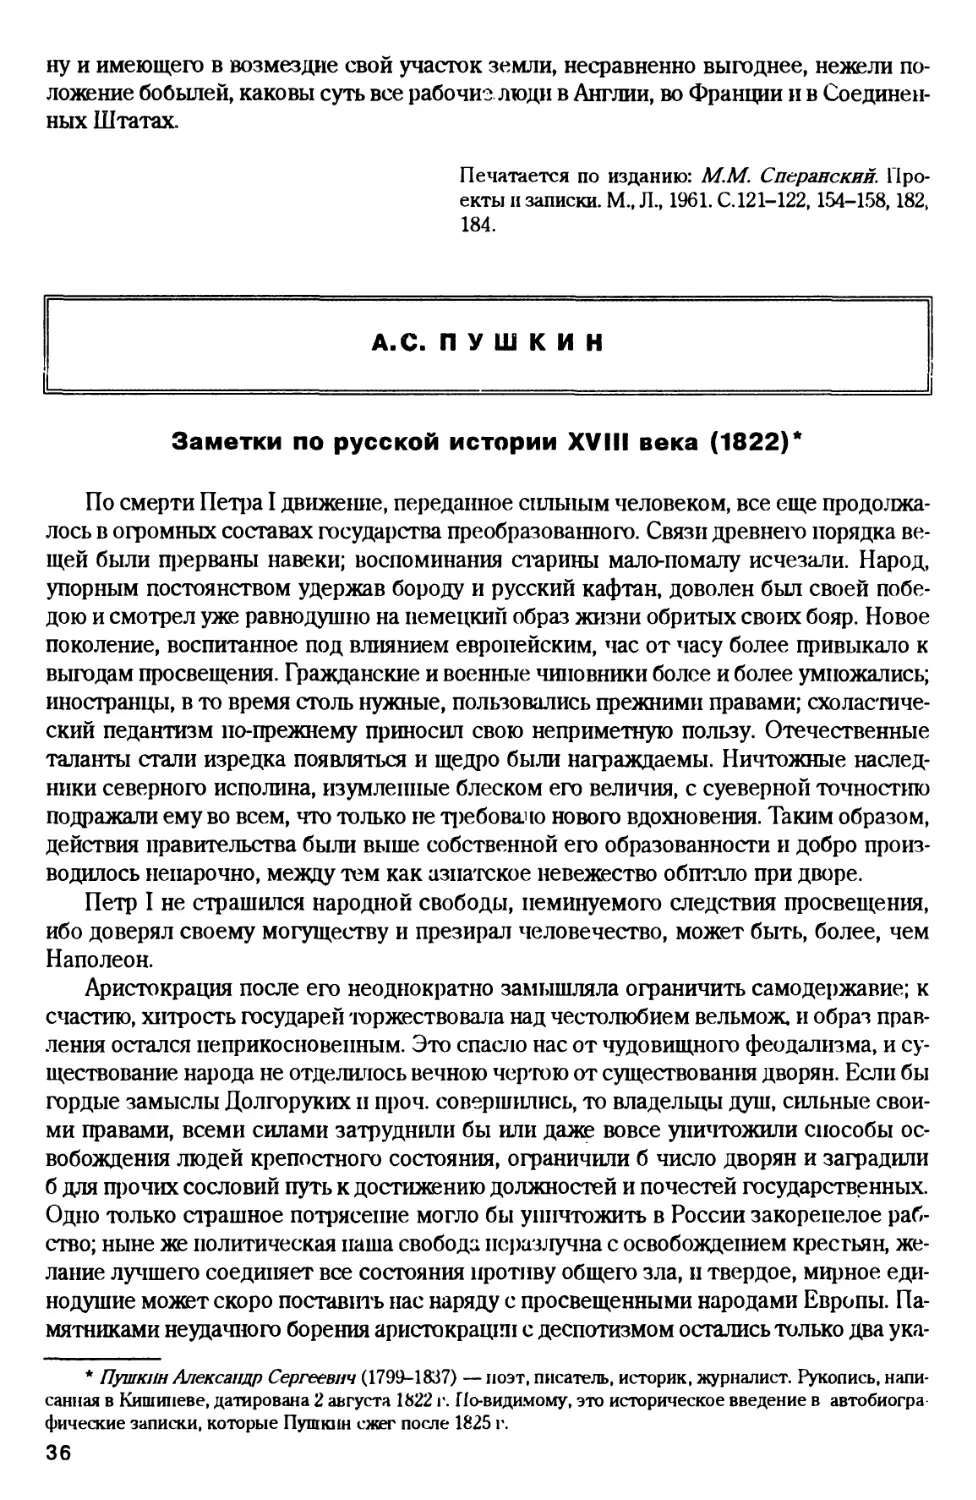 A.C. Пушкин